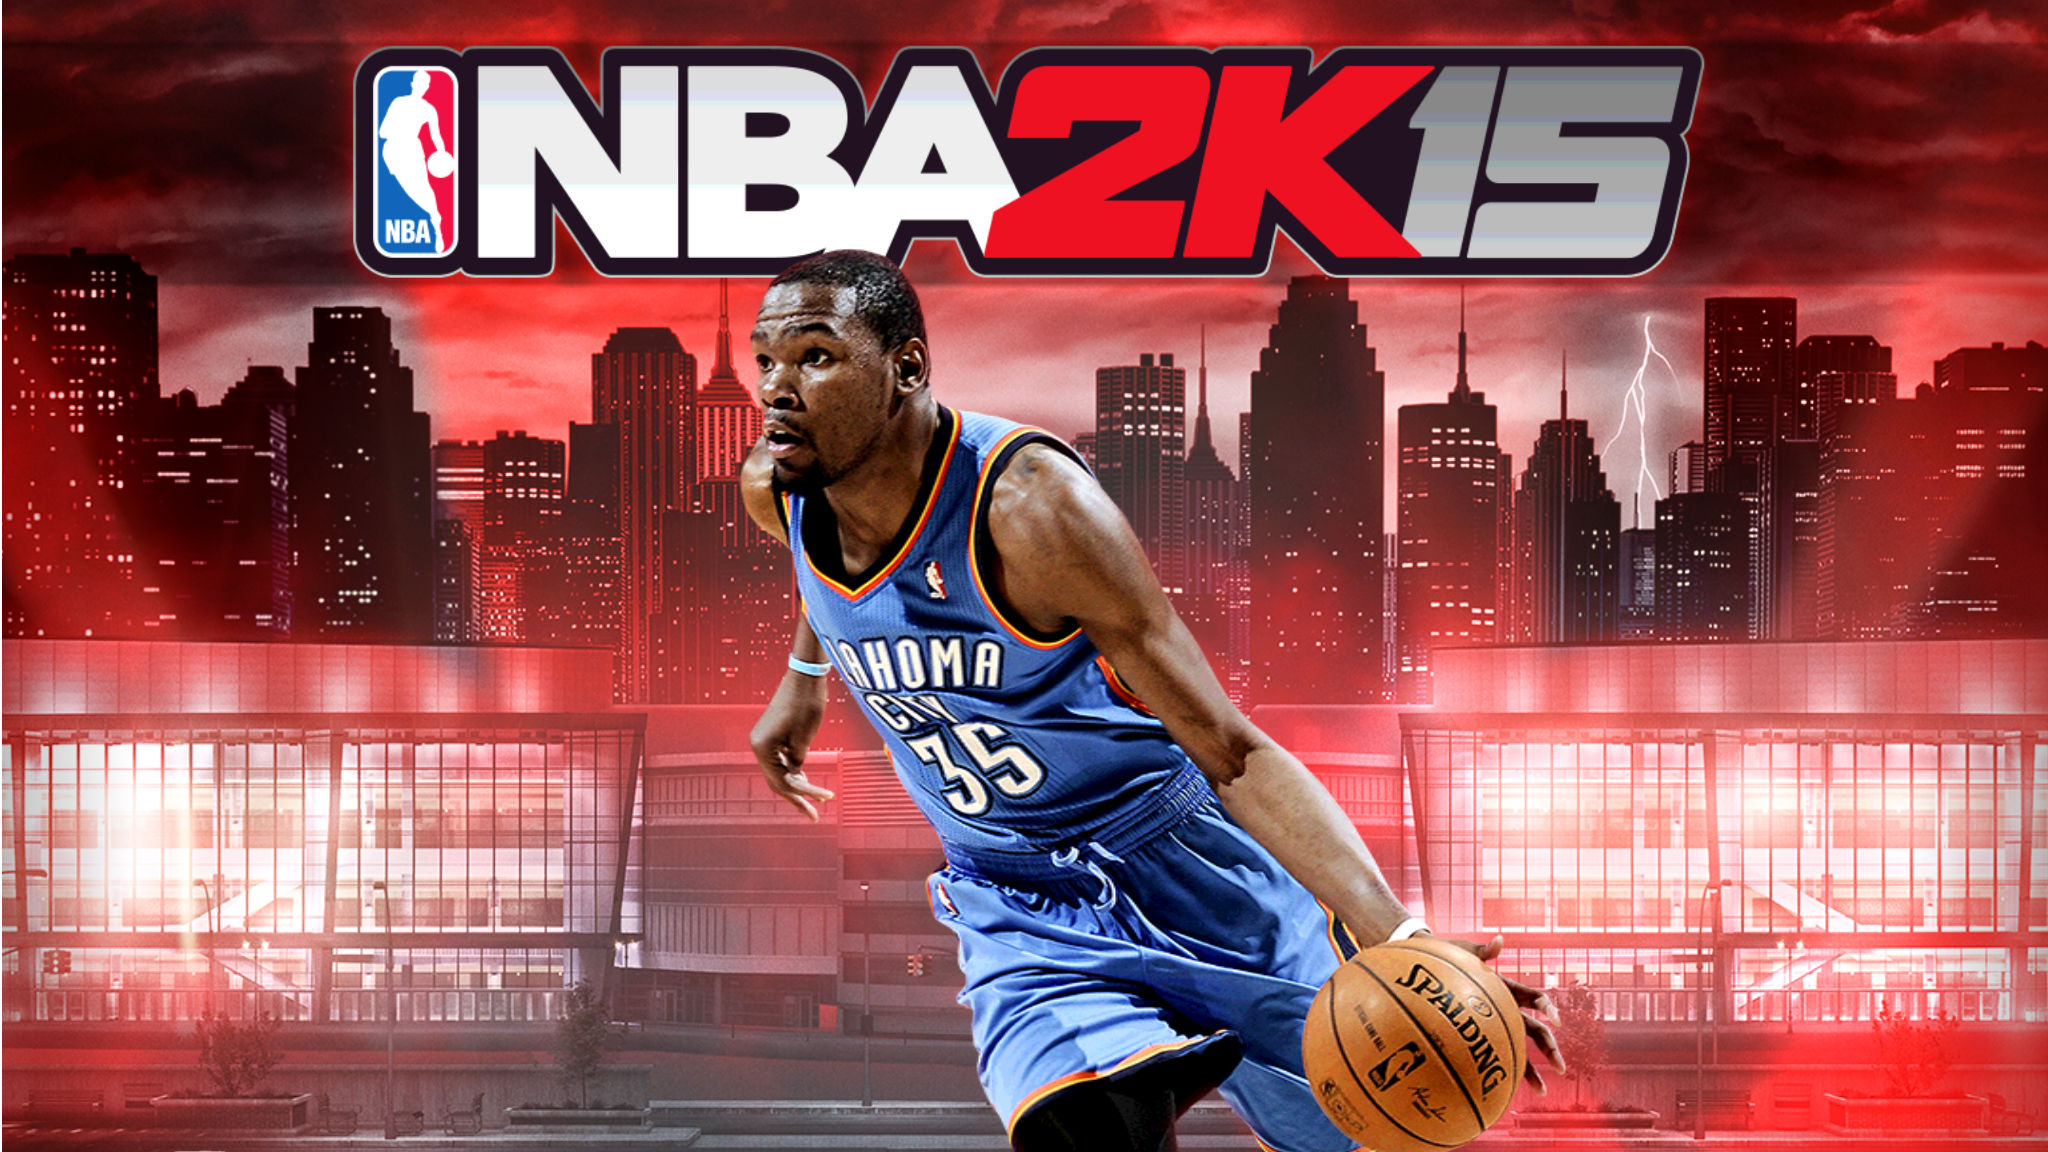 【PS4・PS3・XboxOne】 NBA 2K15 評価・感想まとめ